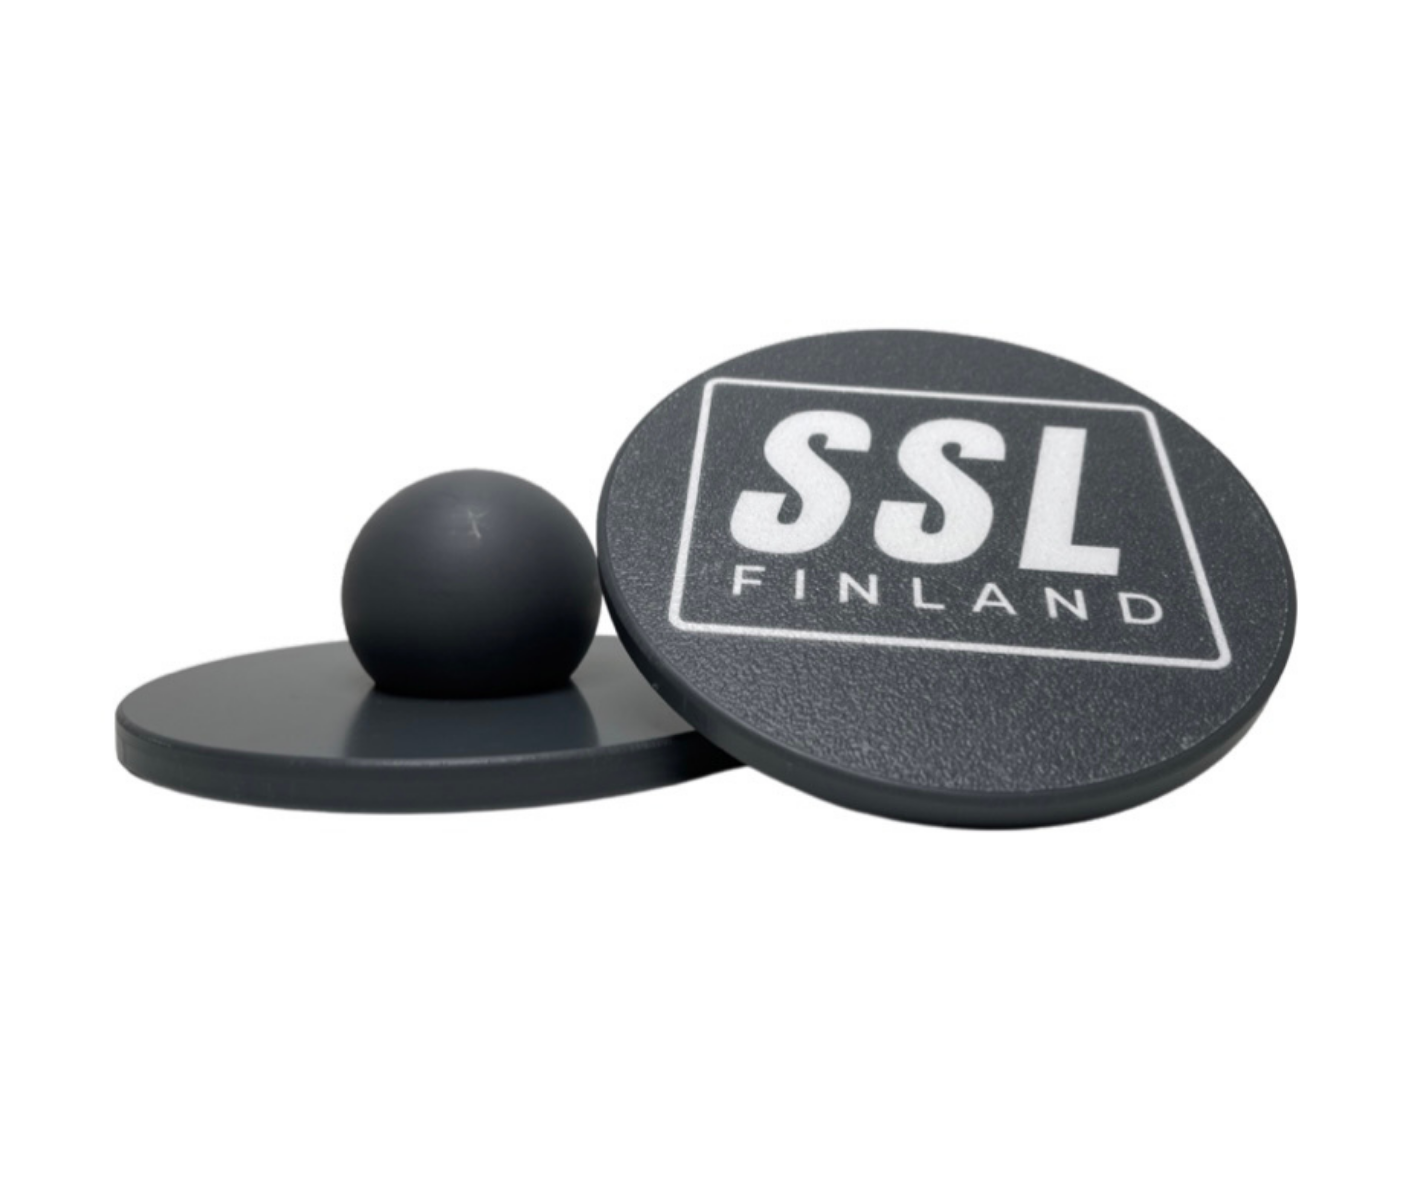 SSL FINLAND TASAPAINOLAUDAT & LEVEL 2 HARJOITUSVIDEOT